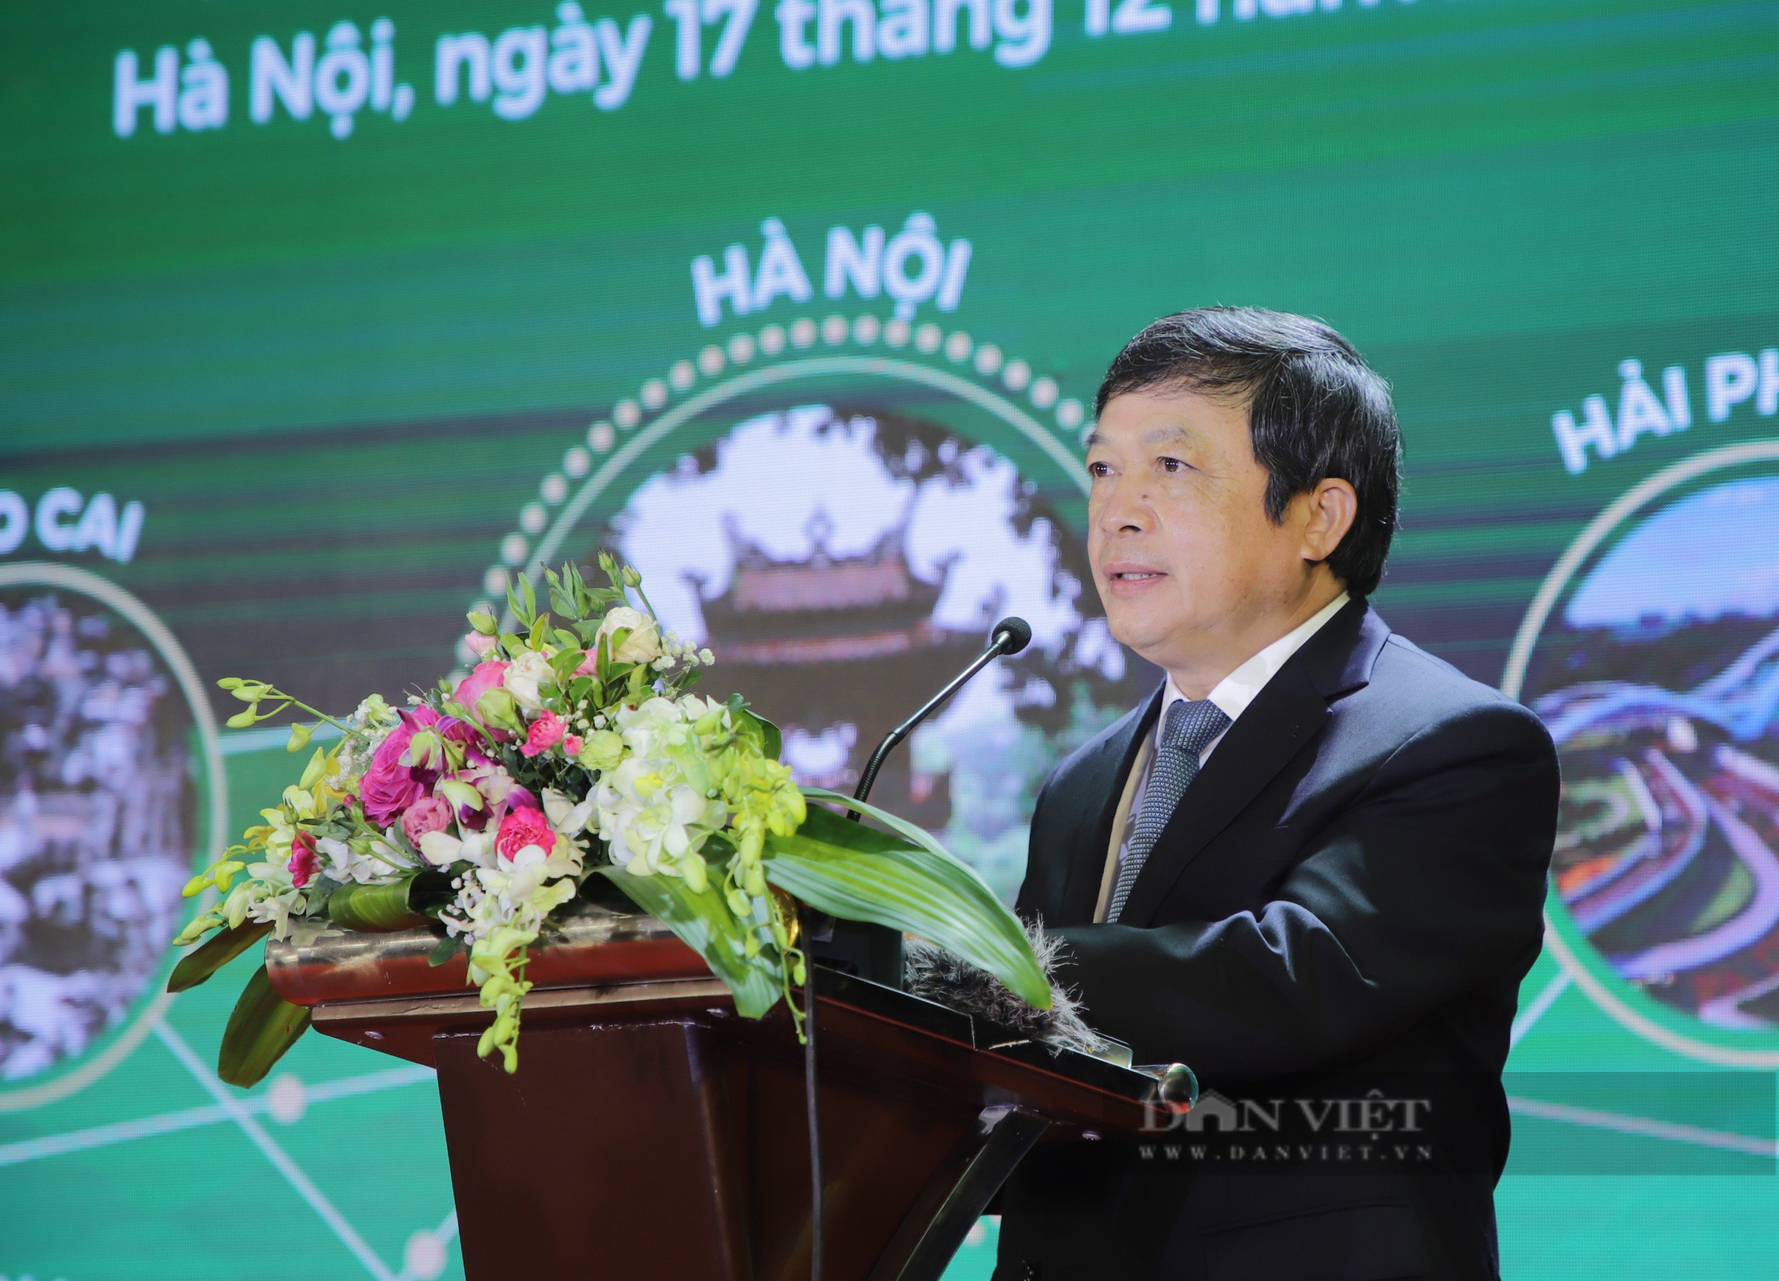 Chính thức thiết lập hành lang du lịch an toàn Hà Nội và 11 tỉnh, thành phố - Ảnh 2.